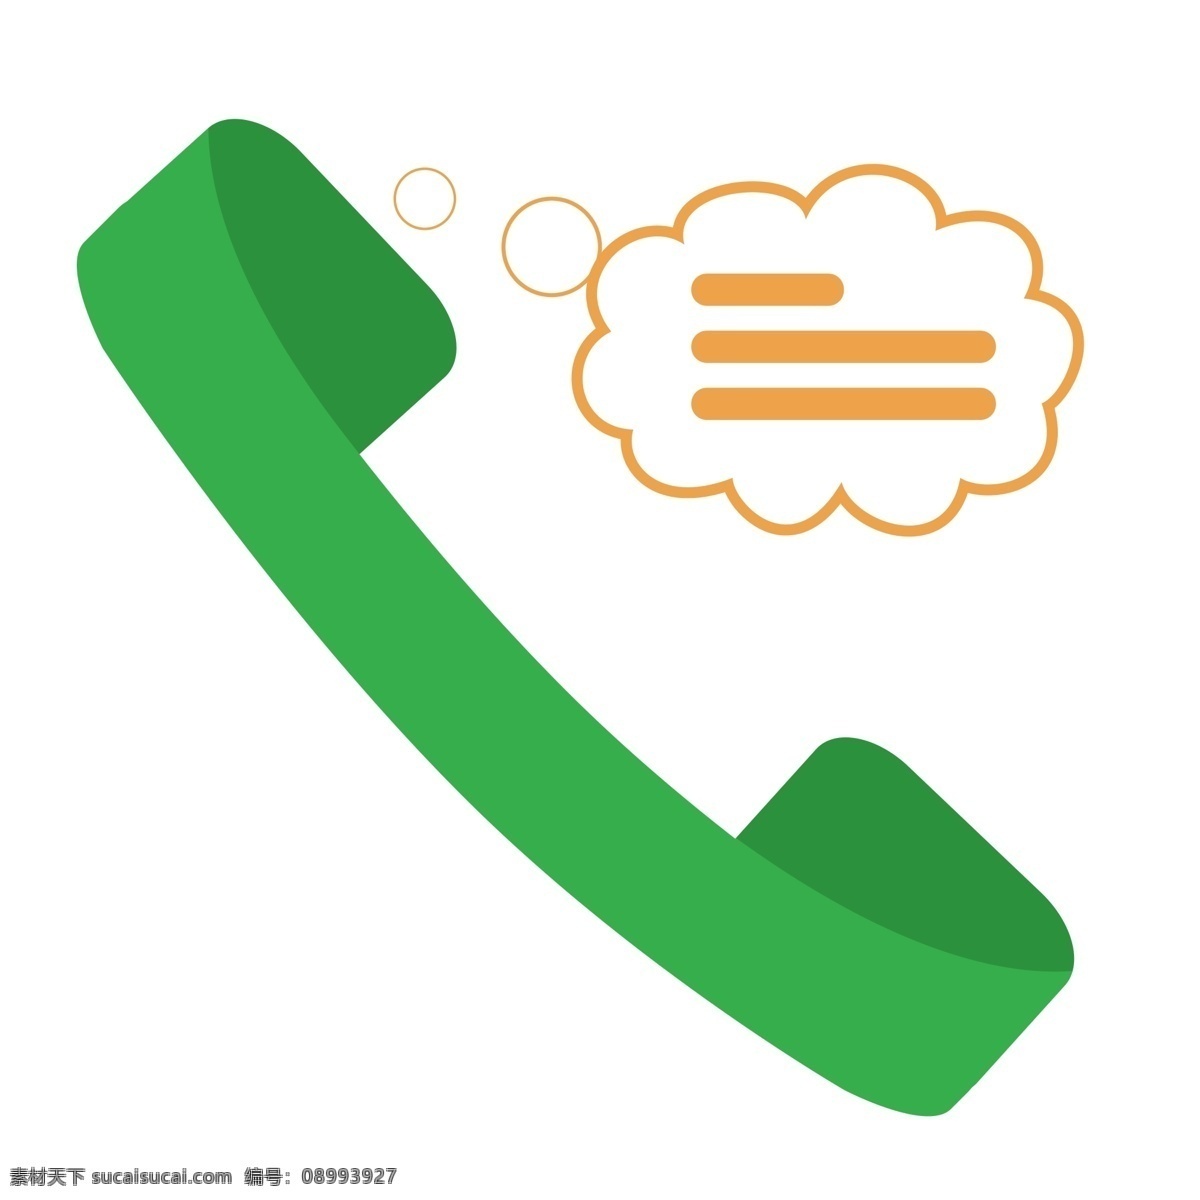 正在 通话 绿色 电 话筒 打电话 手机号码 固定电话 名片 通话记录 聊天内容 预留号码 拨打 保存